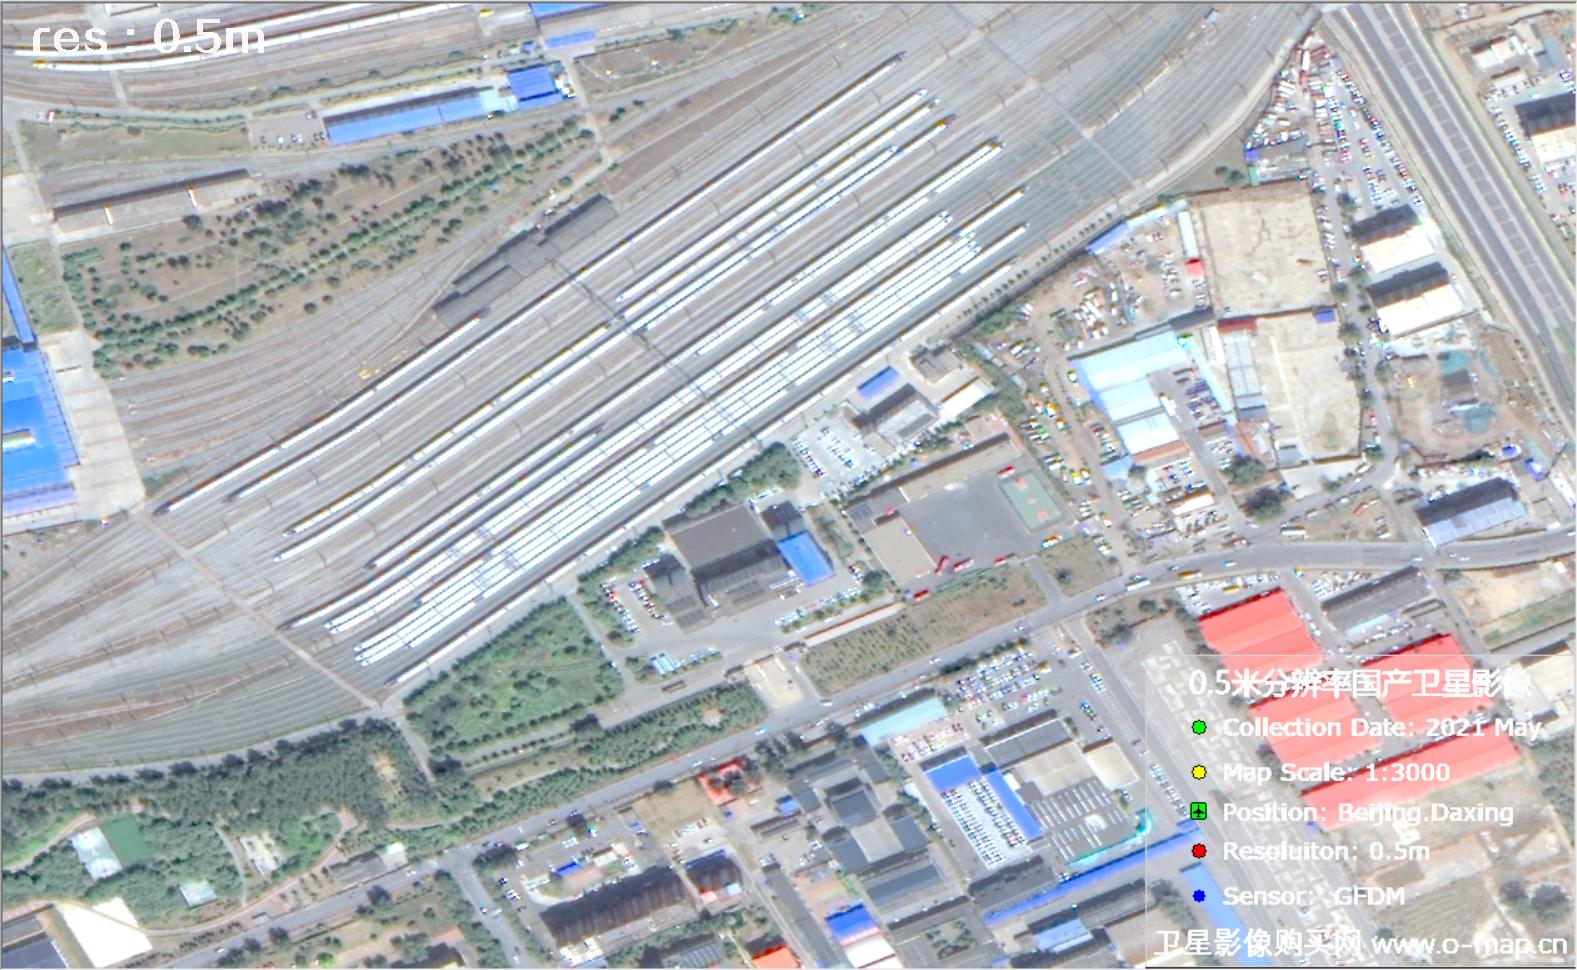 0.5米GFDM高分多模卫星2021年拍摄的北京市影像图